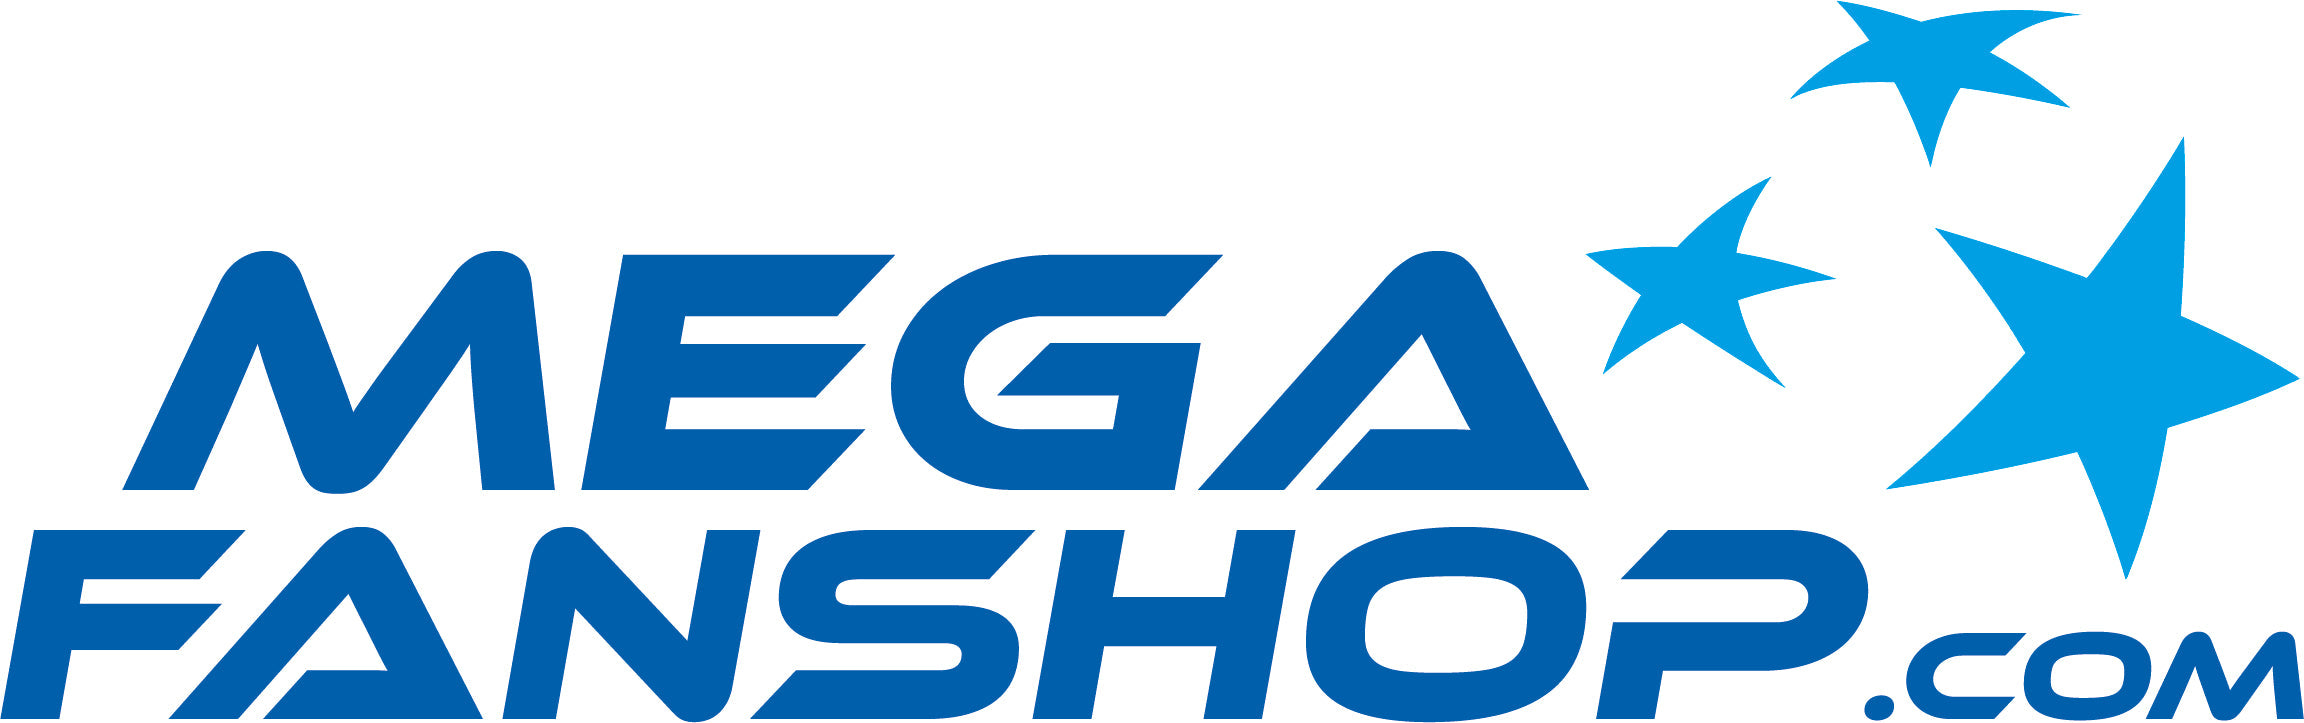 Megafanshop GmbH